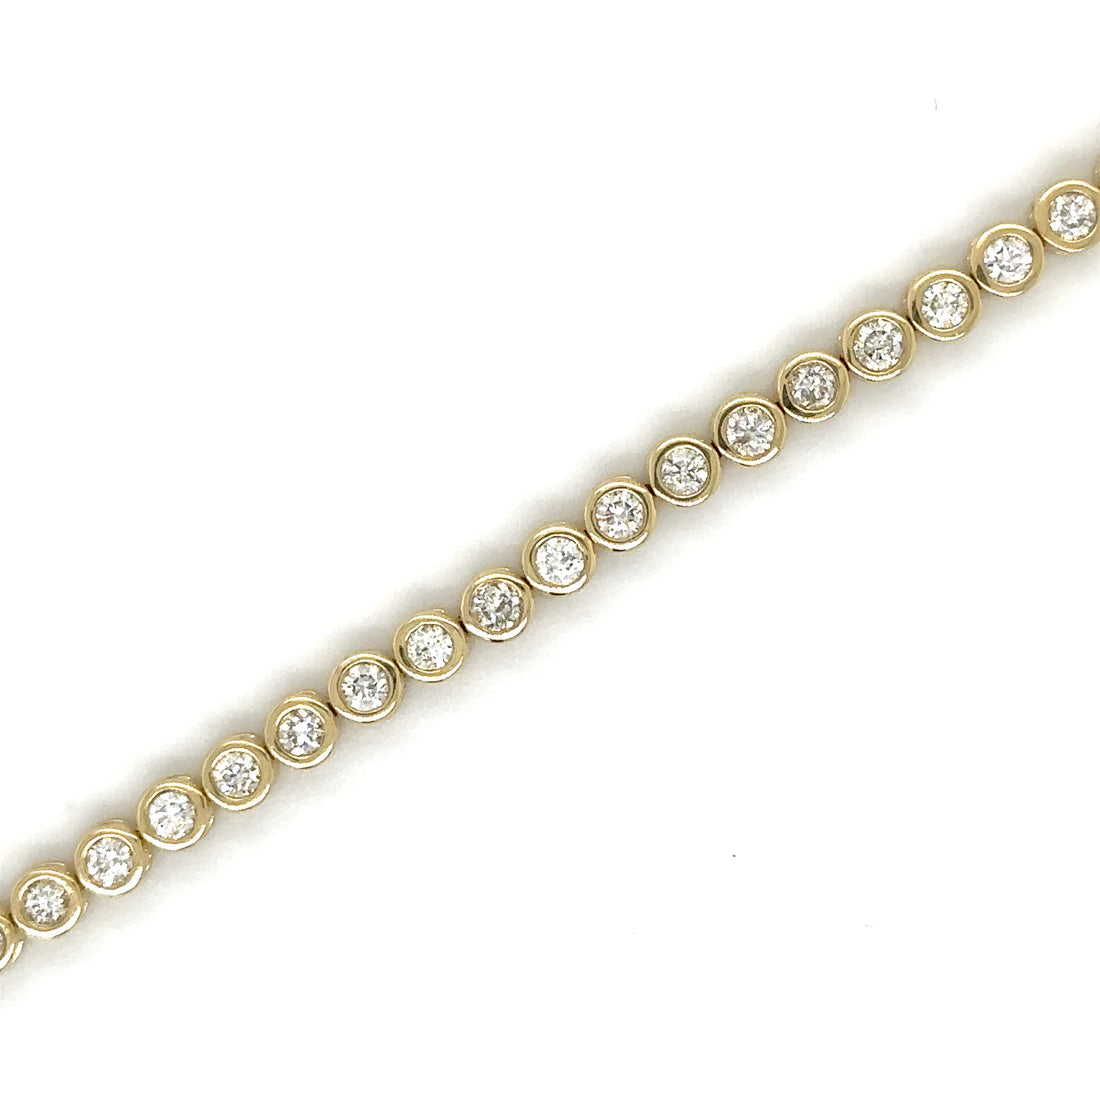 Diamond Bezel Tennis Bracelet